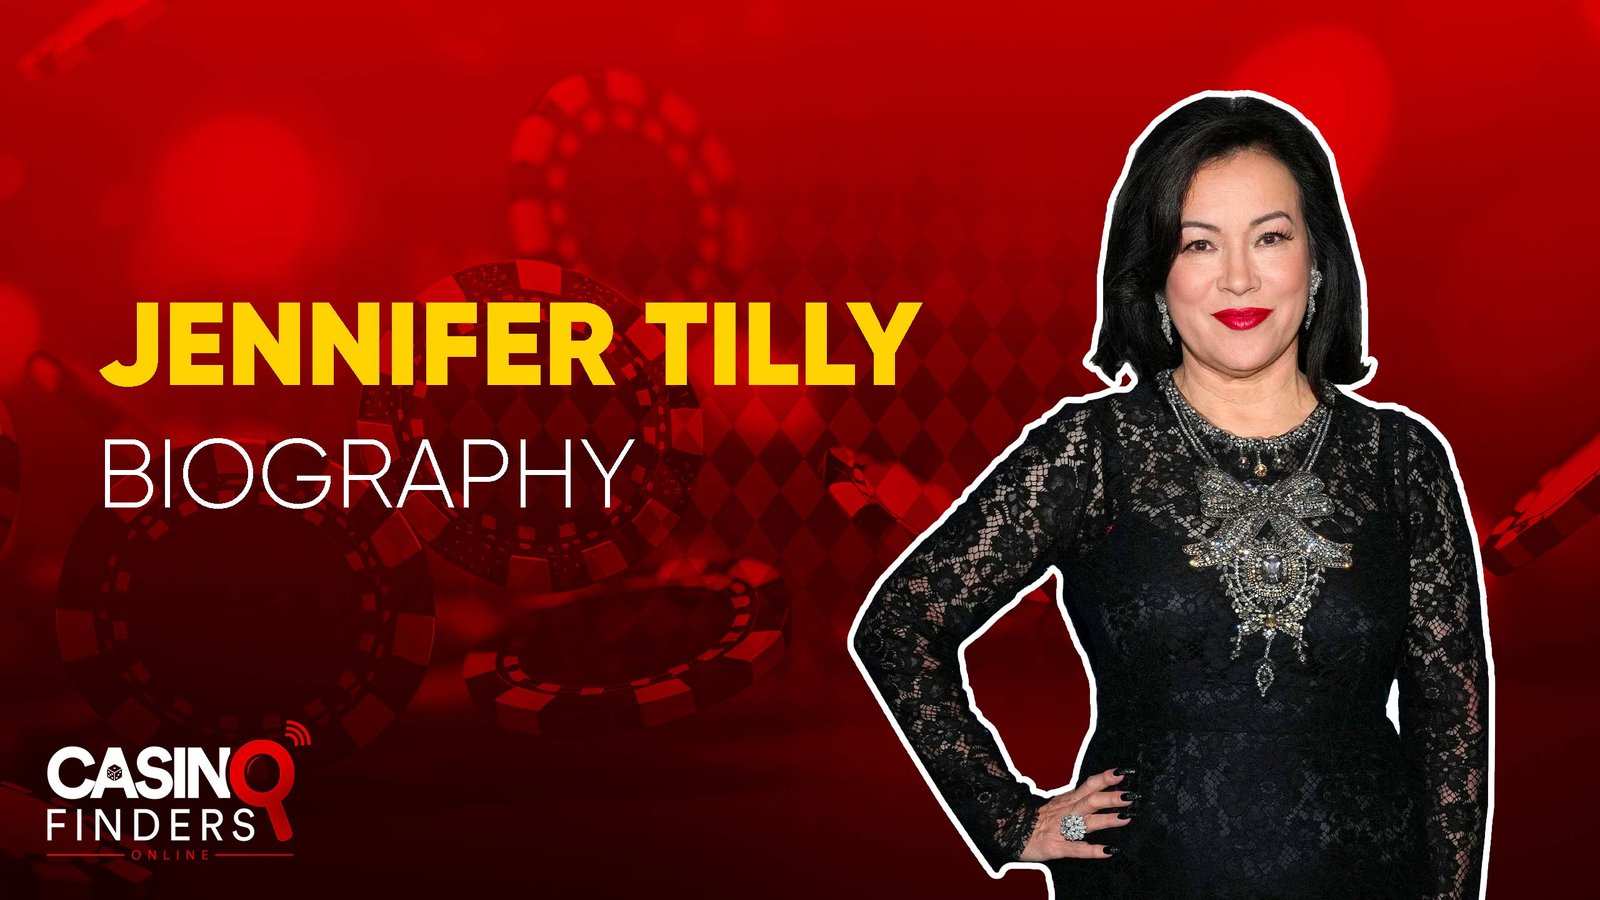 Jennifer Tilly Poker Player Biography